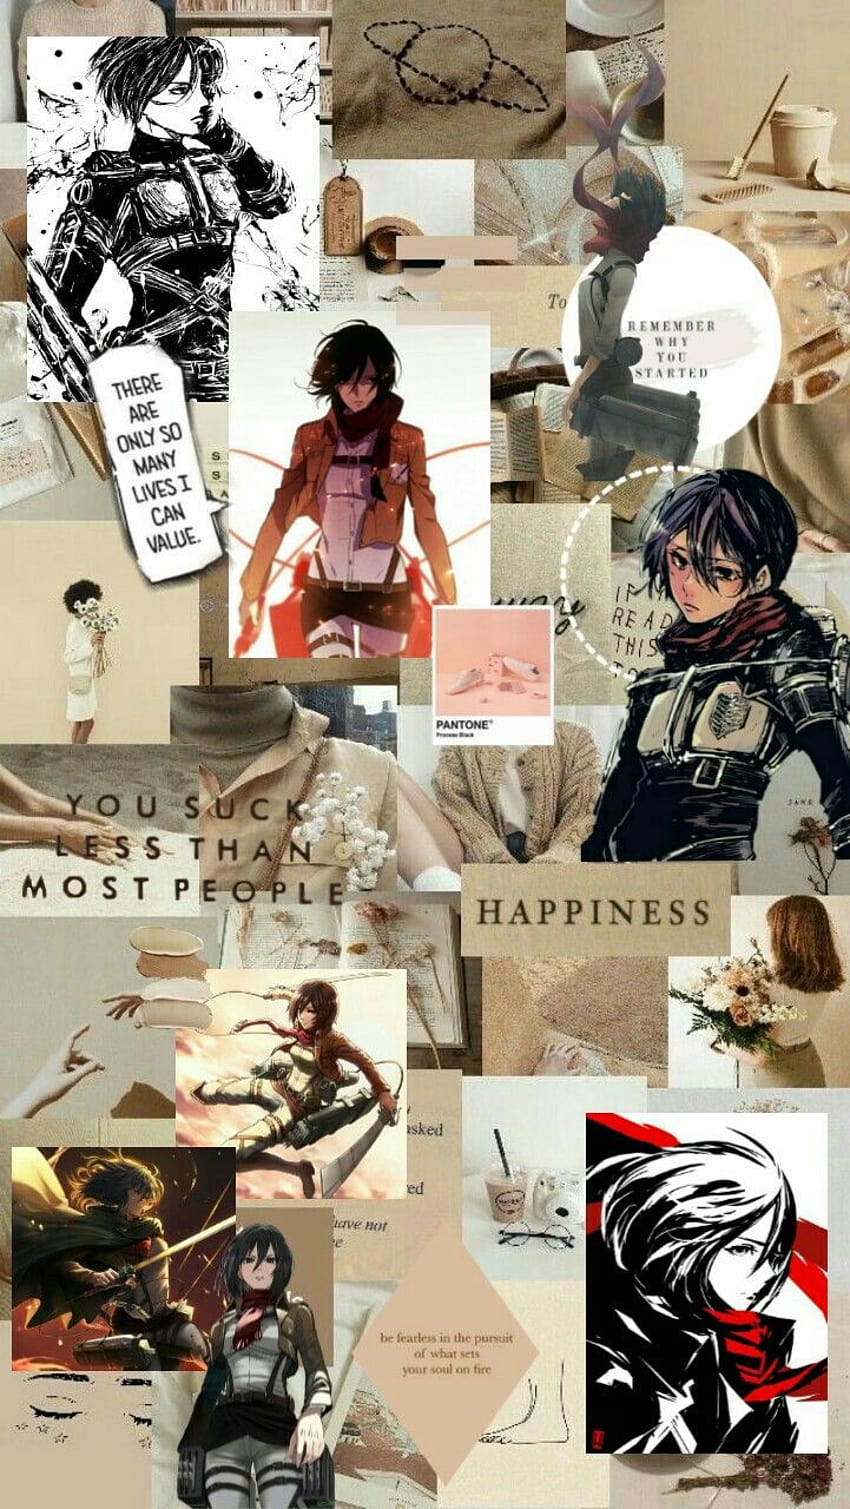 Download Mikasa Pfp Kick Wallpaper | Wallpapers.com